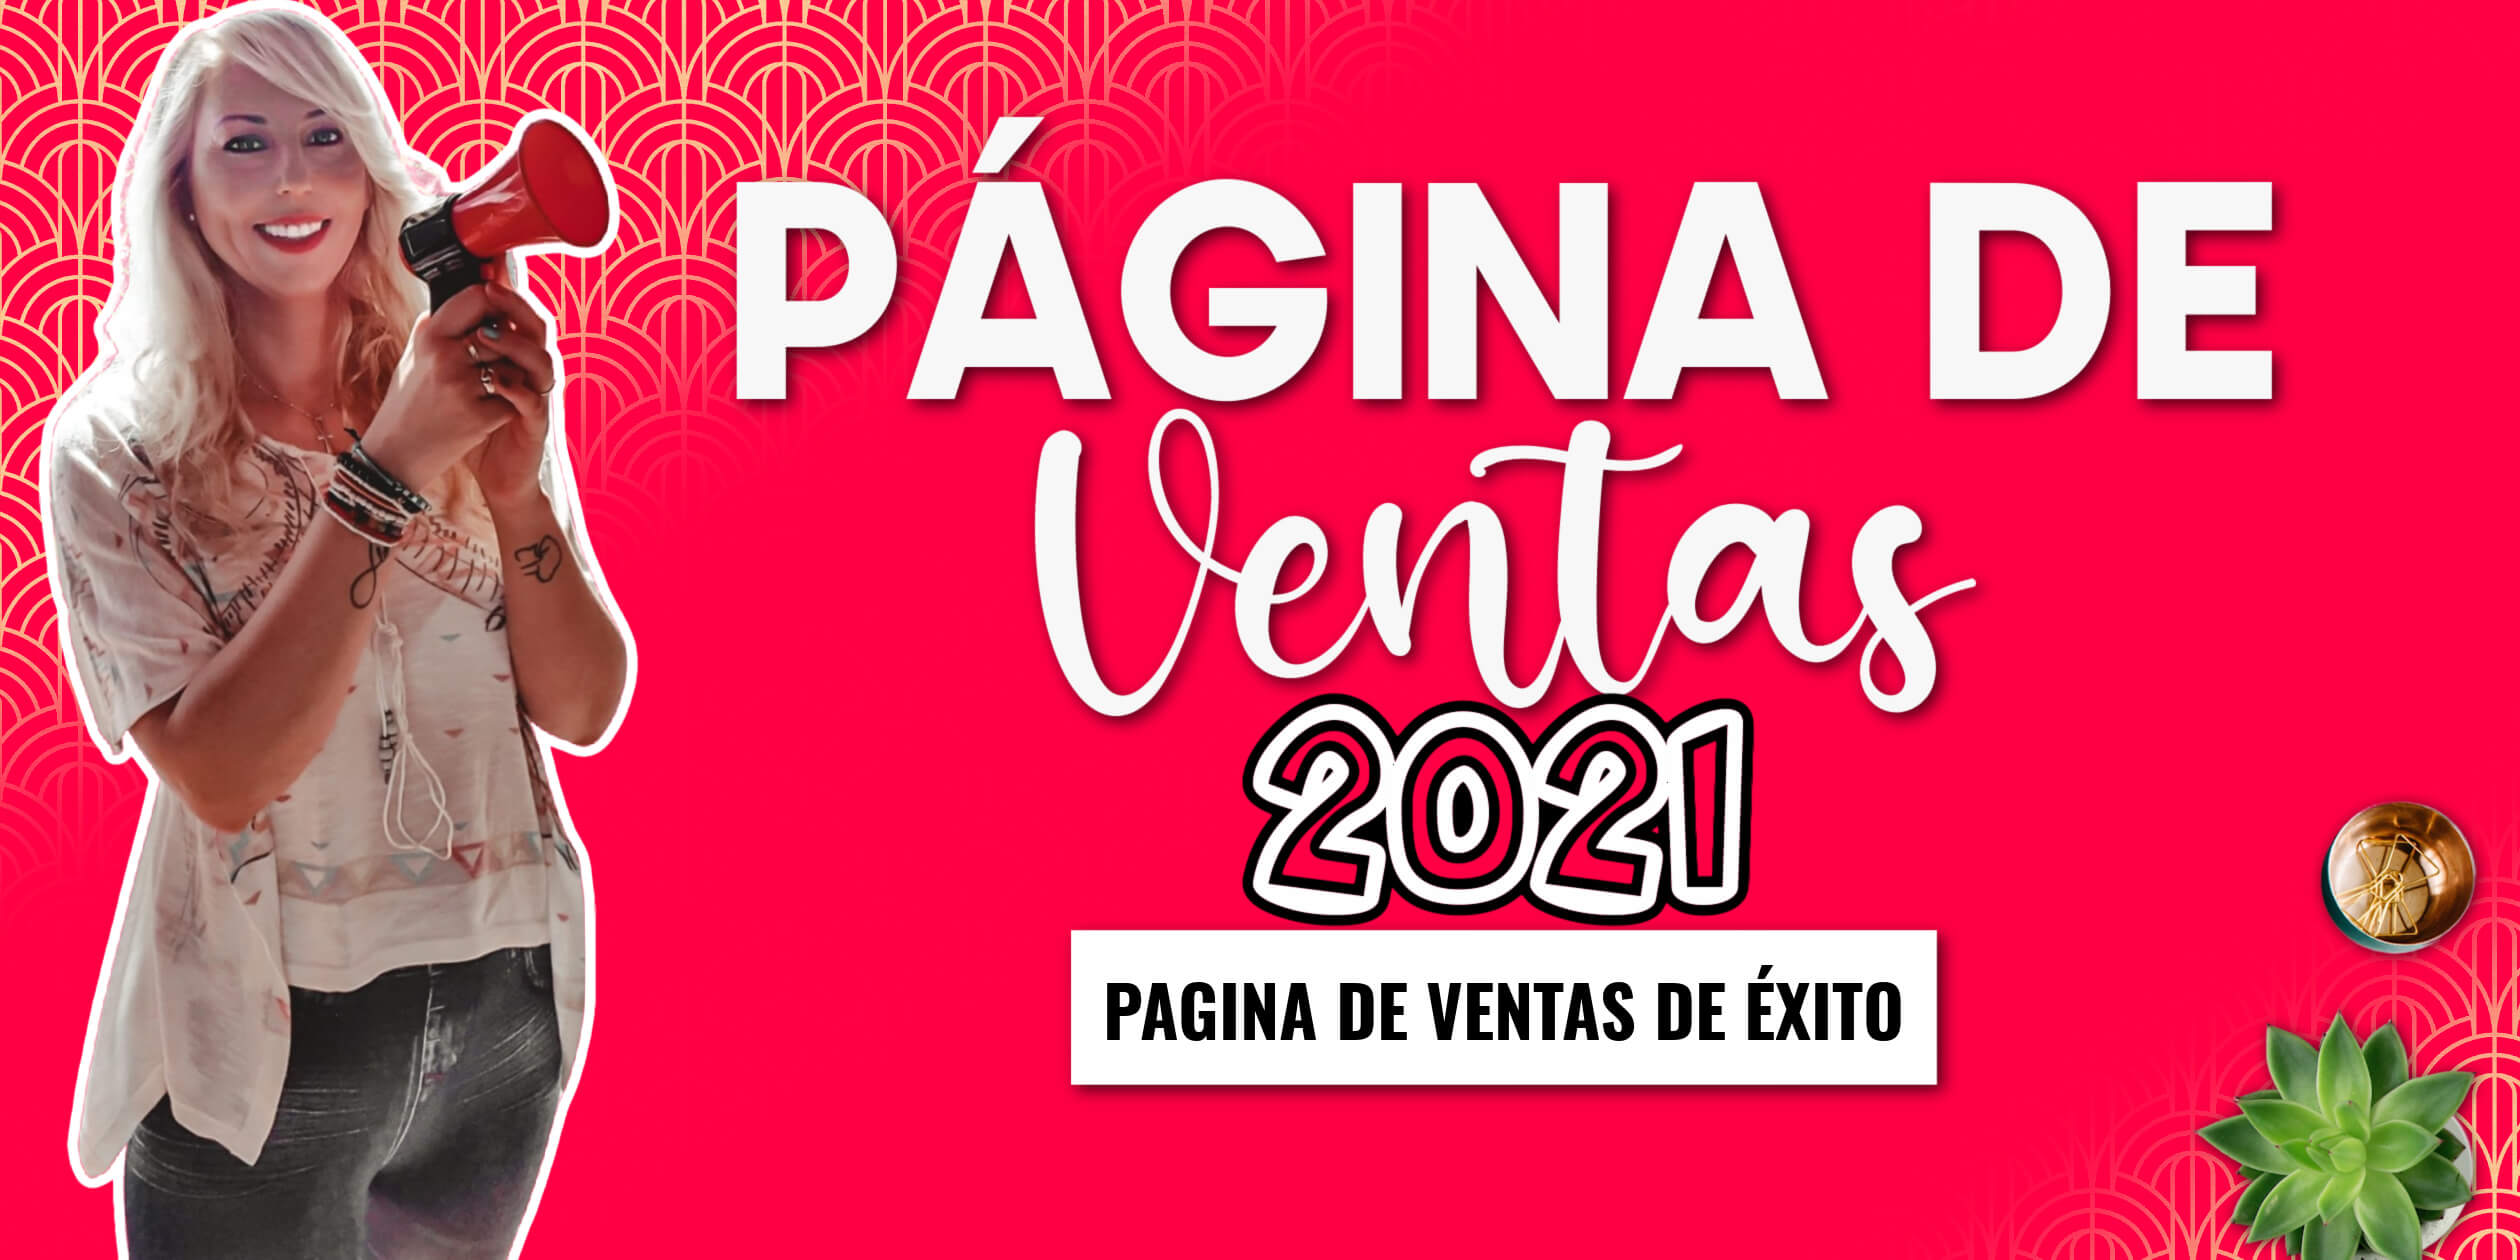 PAGINA DE VENTAS 2021